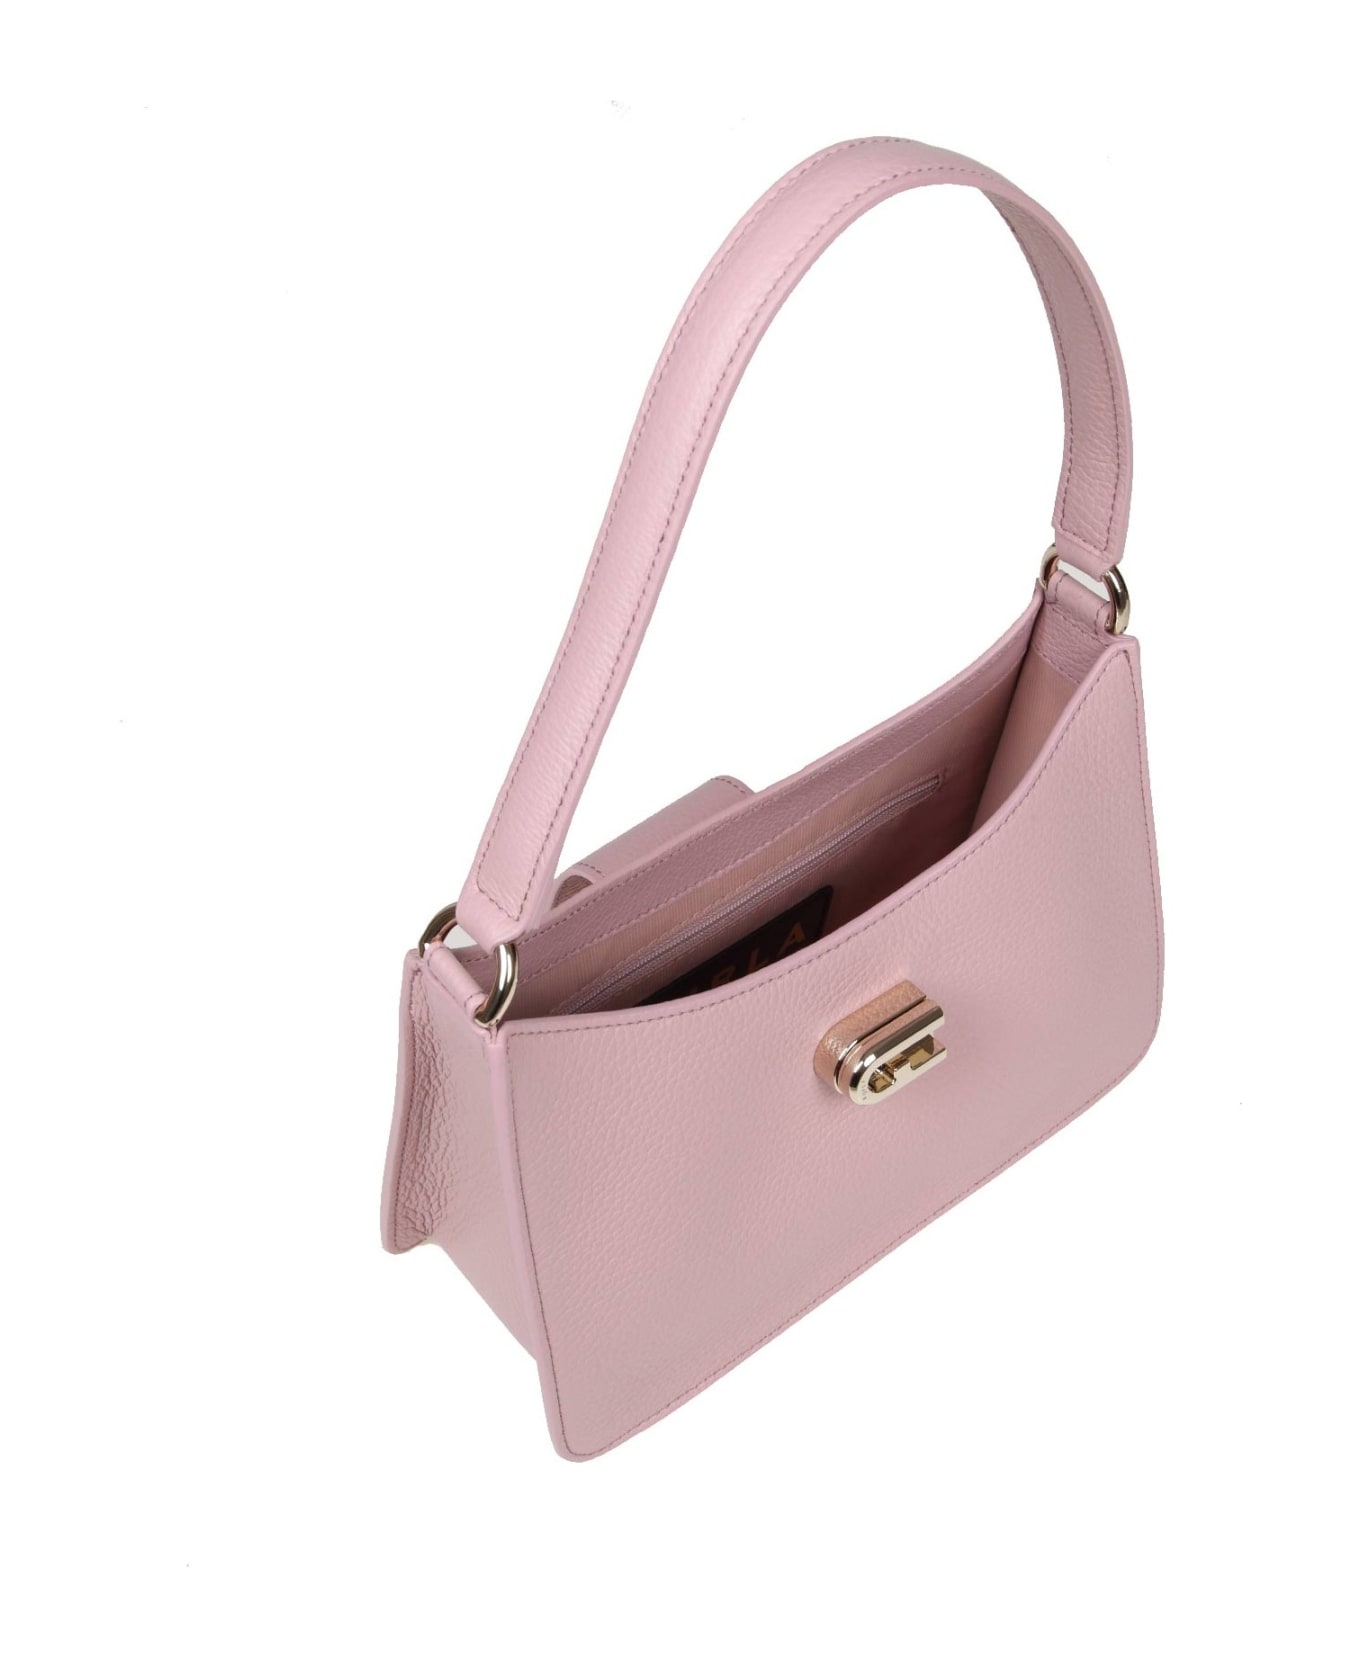 Furla 1927 S Shoulder Bag In Pink Soft Leather - Alba トートバッグ